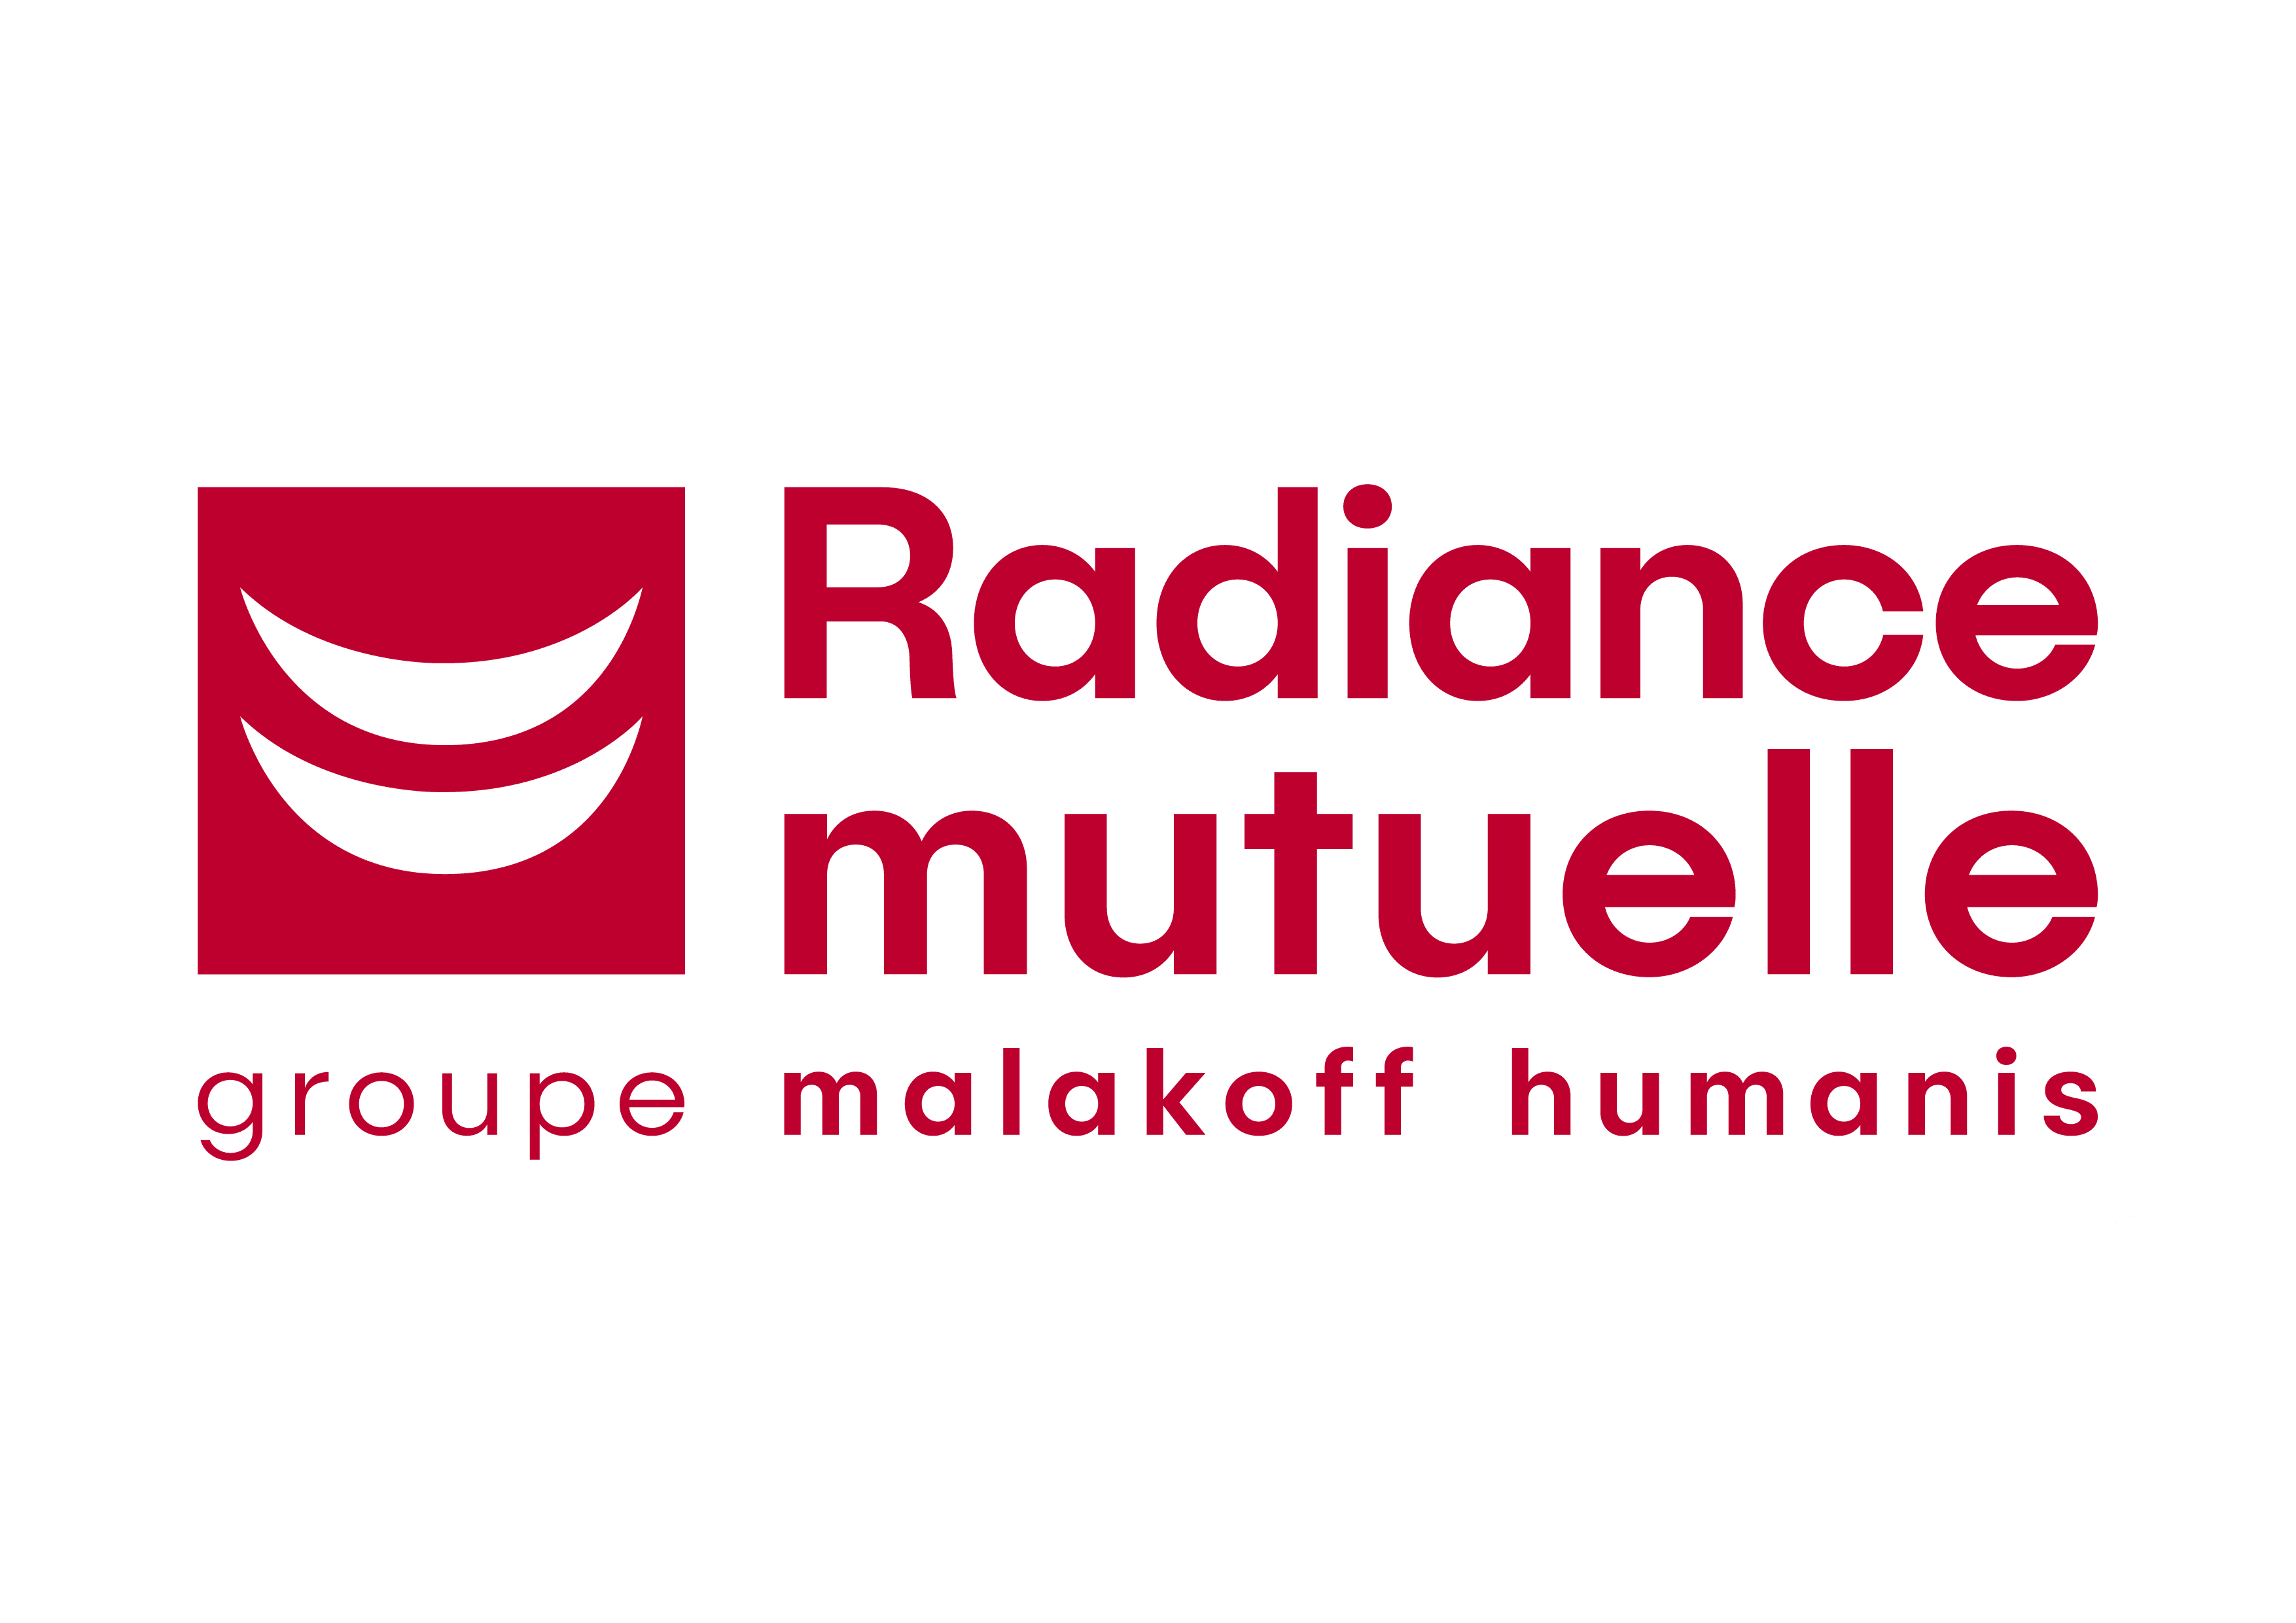 Radiance Mutuelle groupe Malakoff Humanis